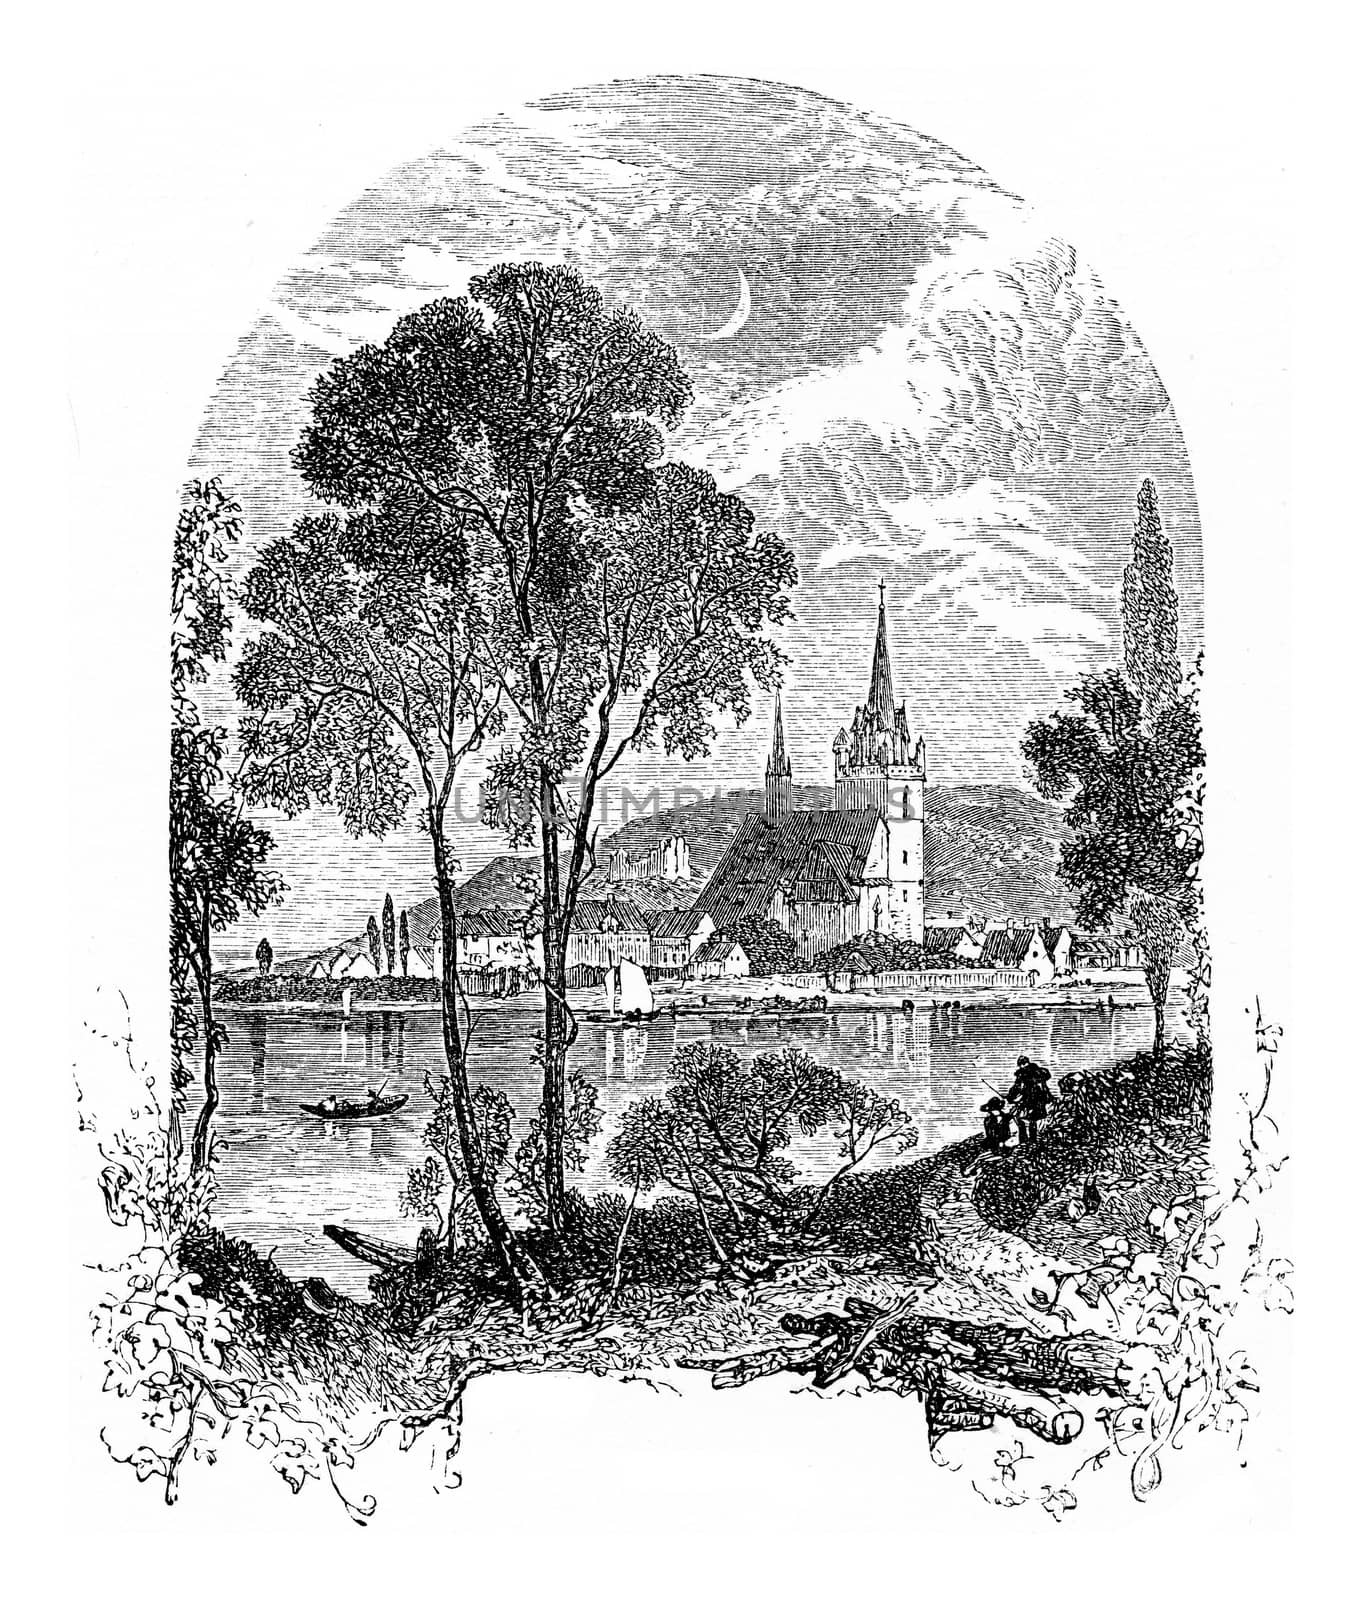 Bingen am Rhein, vintage engraved illustration. From Chemin des Ecoliers, 1861.
